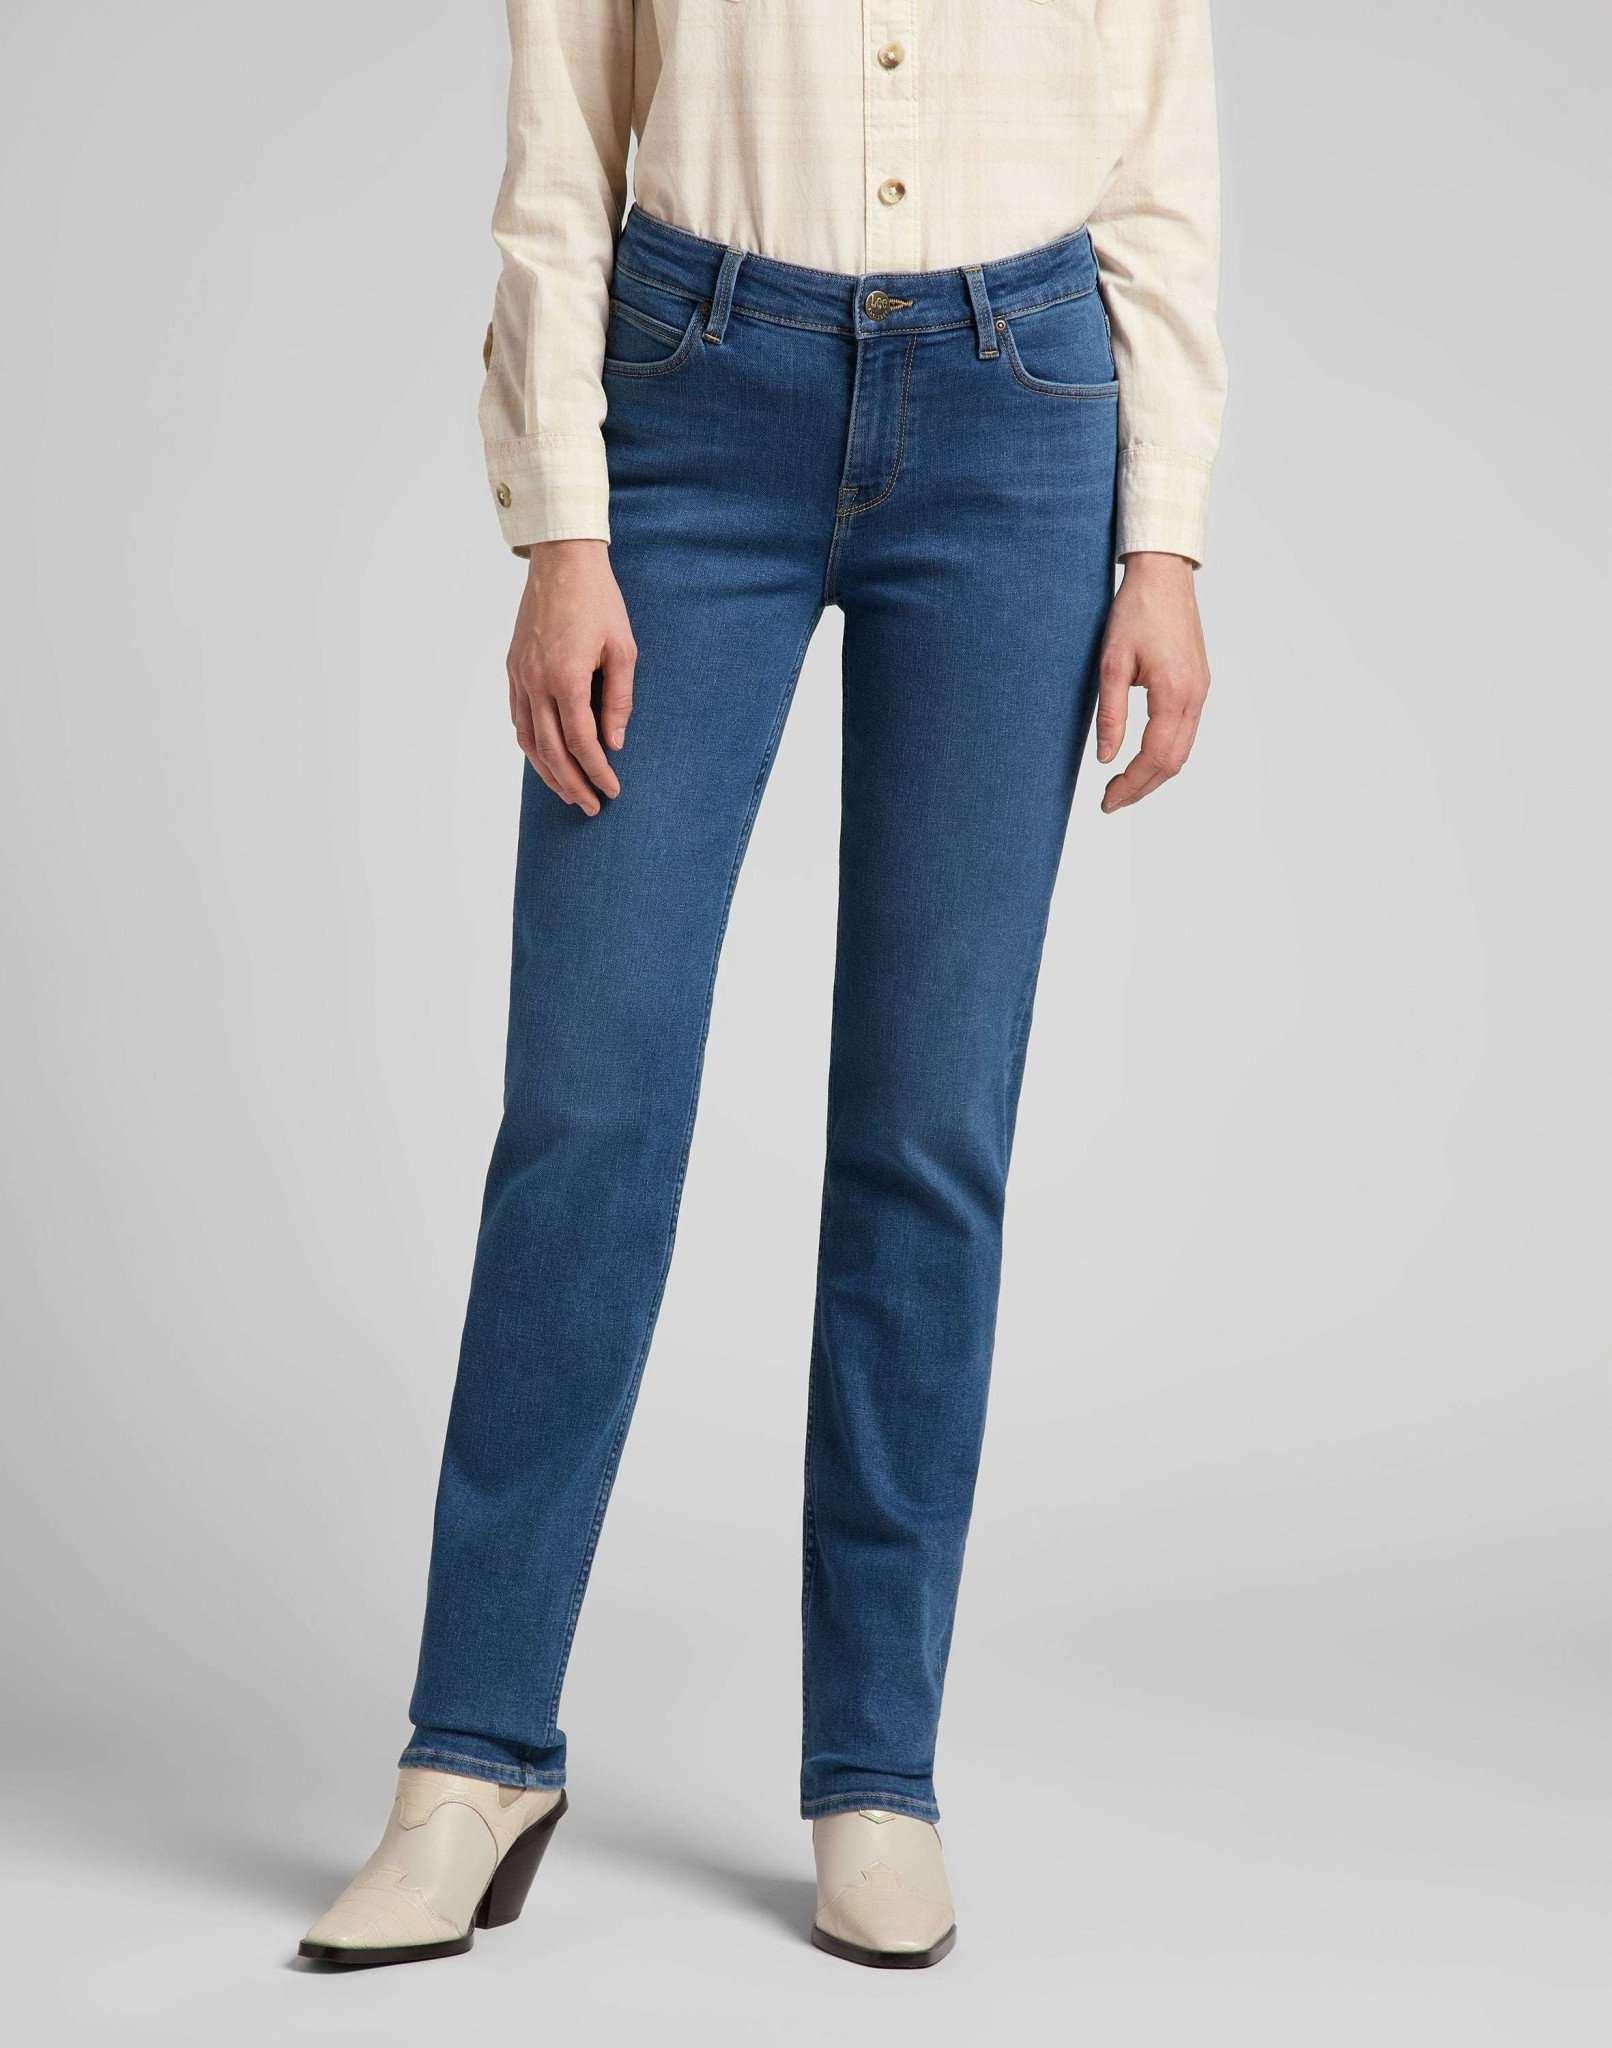 Jeans Straight Leg Marion Damen Blau Denim L33/W33 von Lee